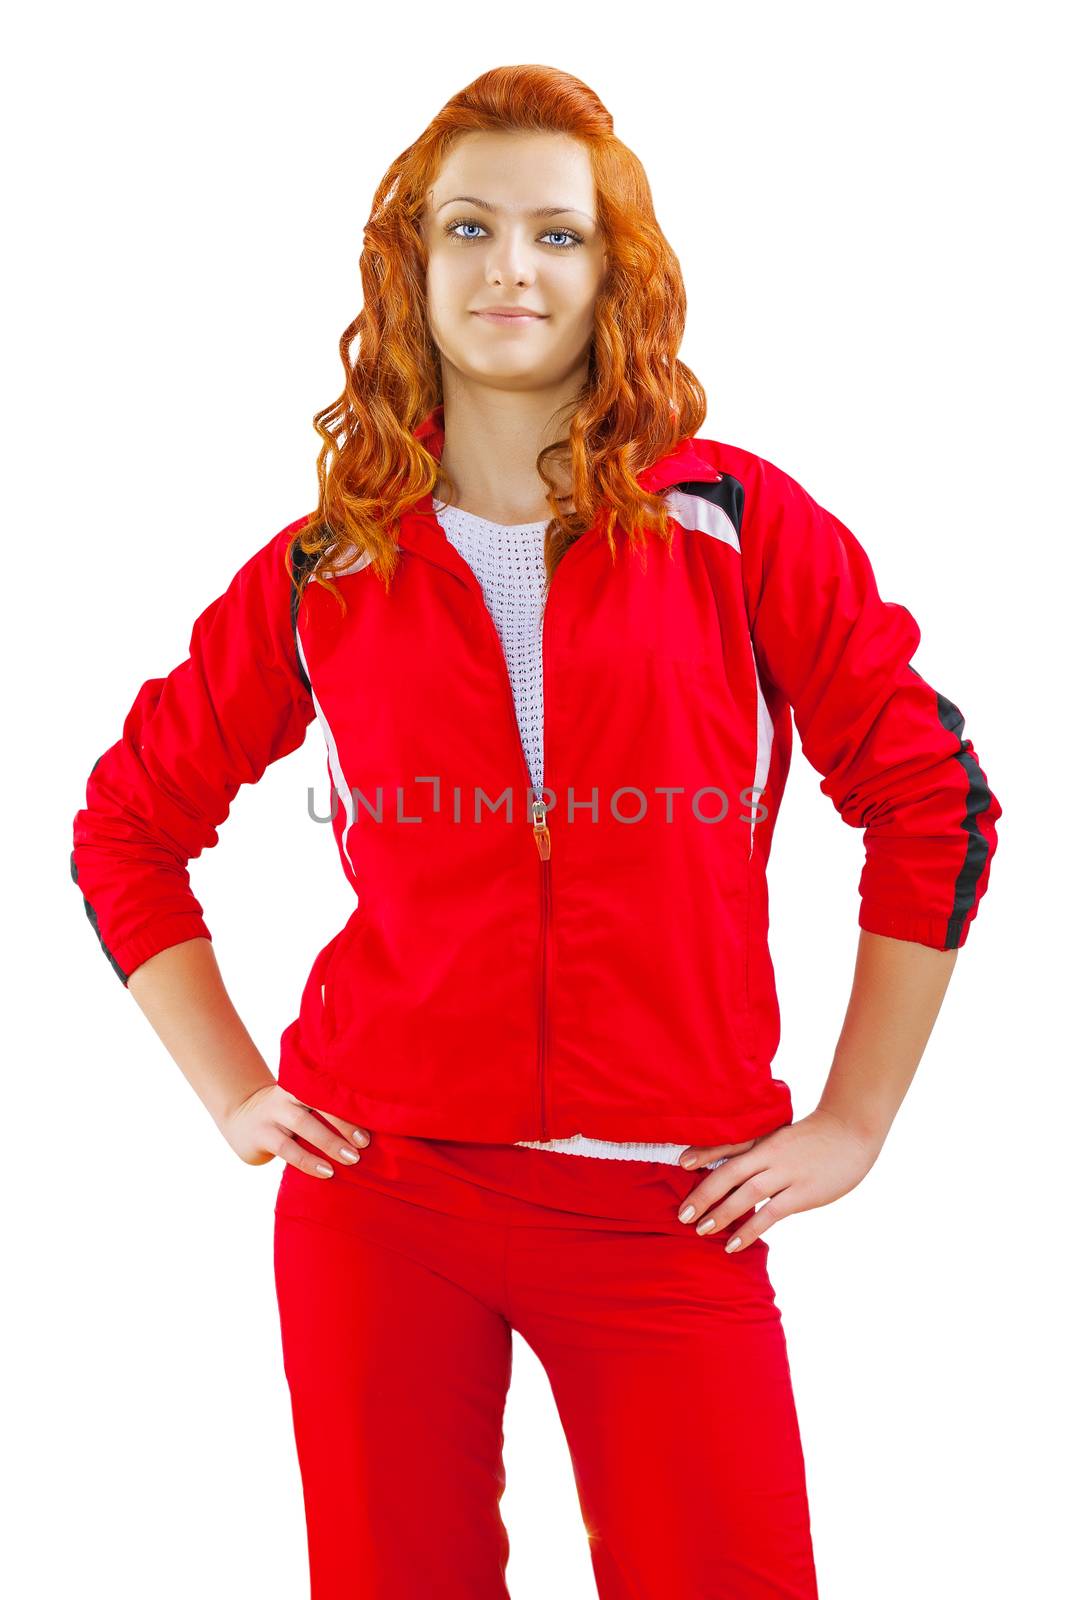 a sporty redhead female